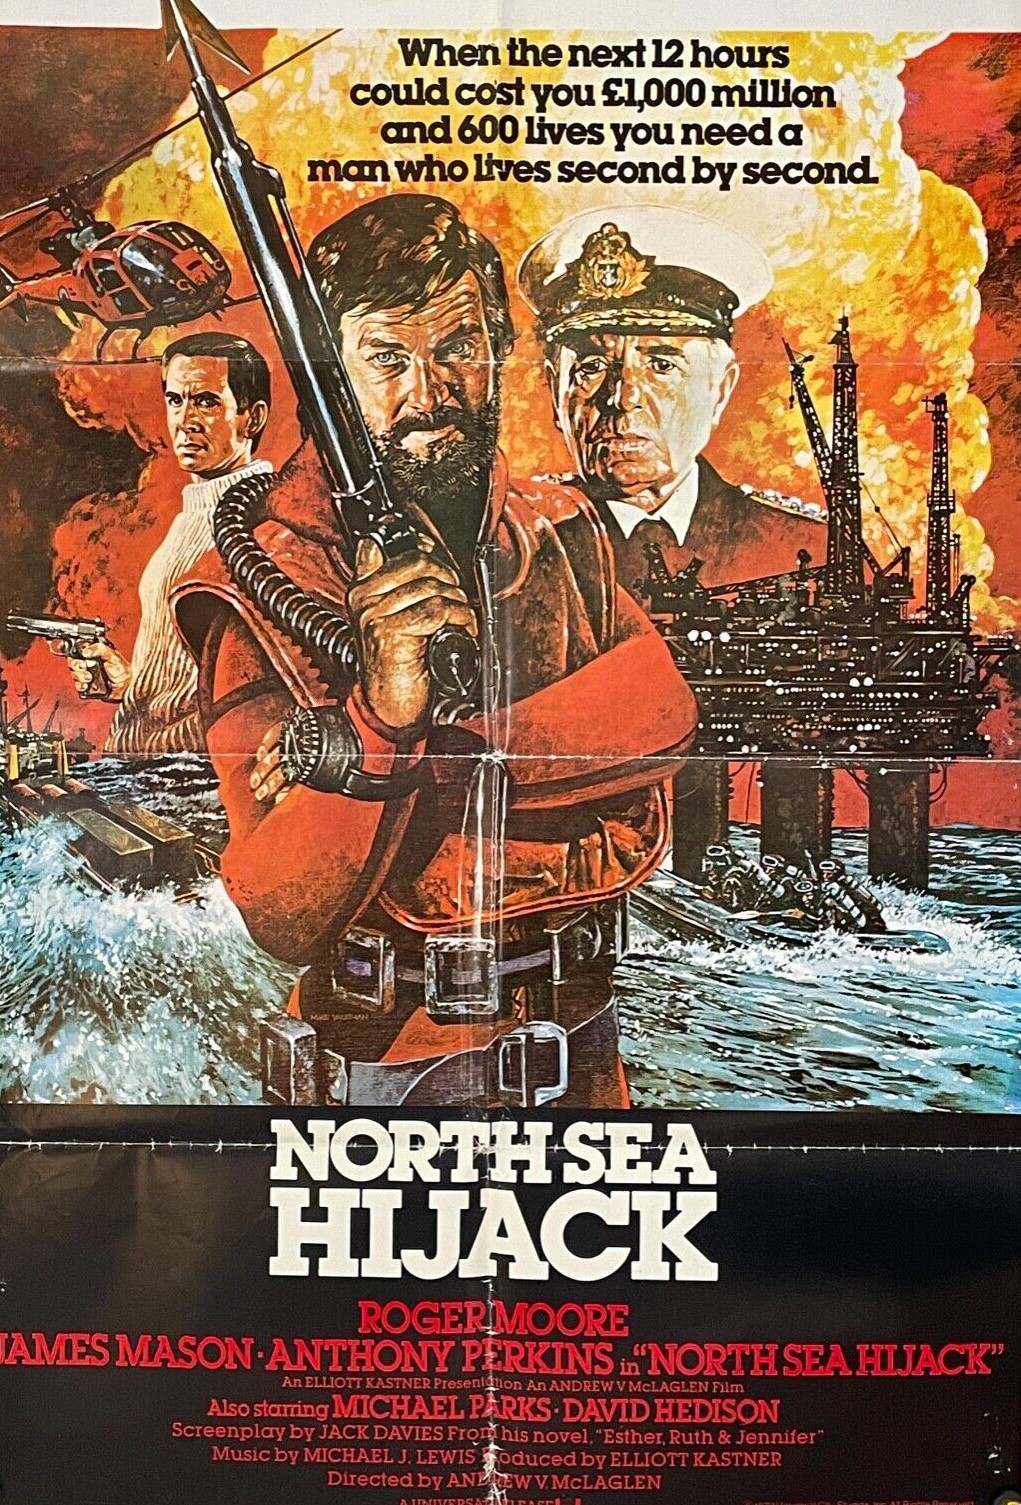 North Sea Hijack / ffolkes (1980) ****